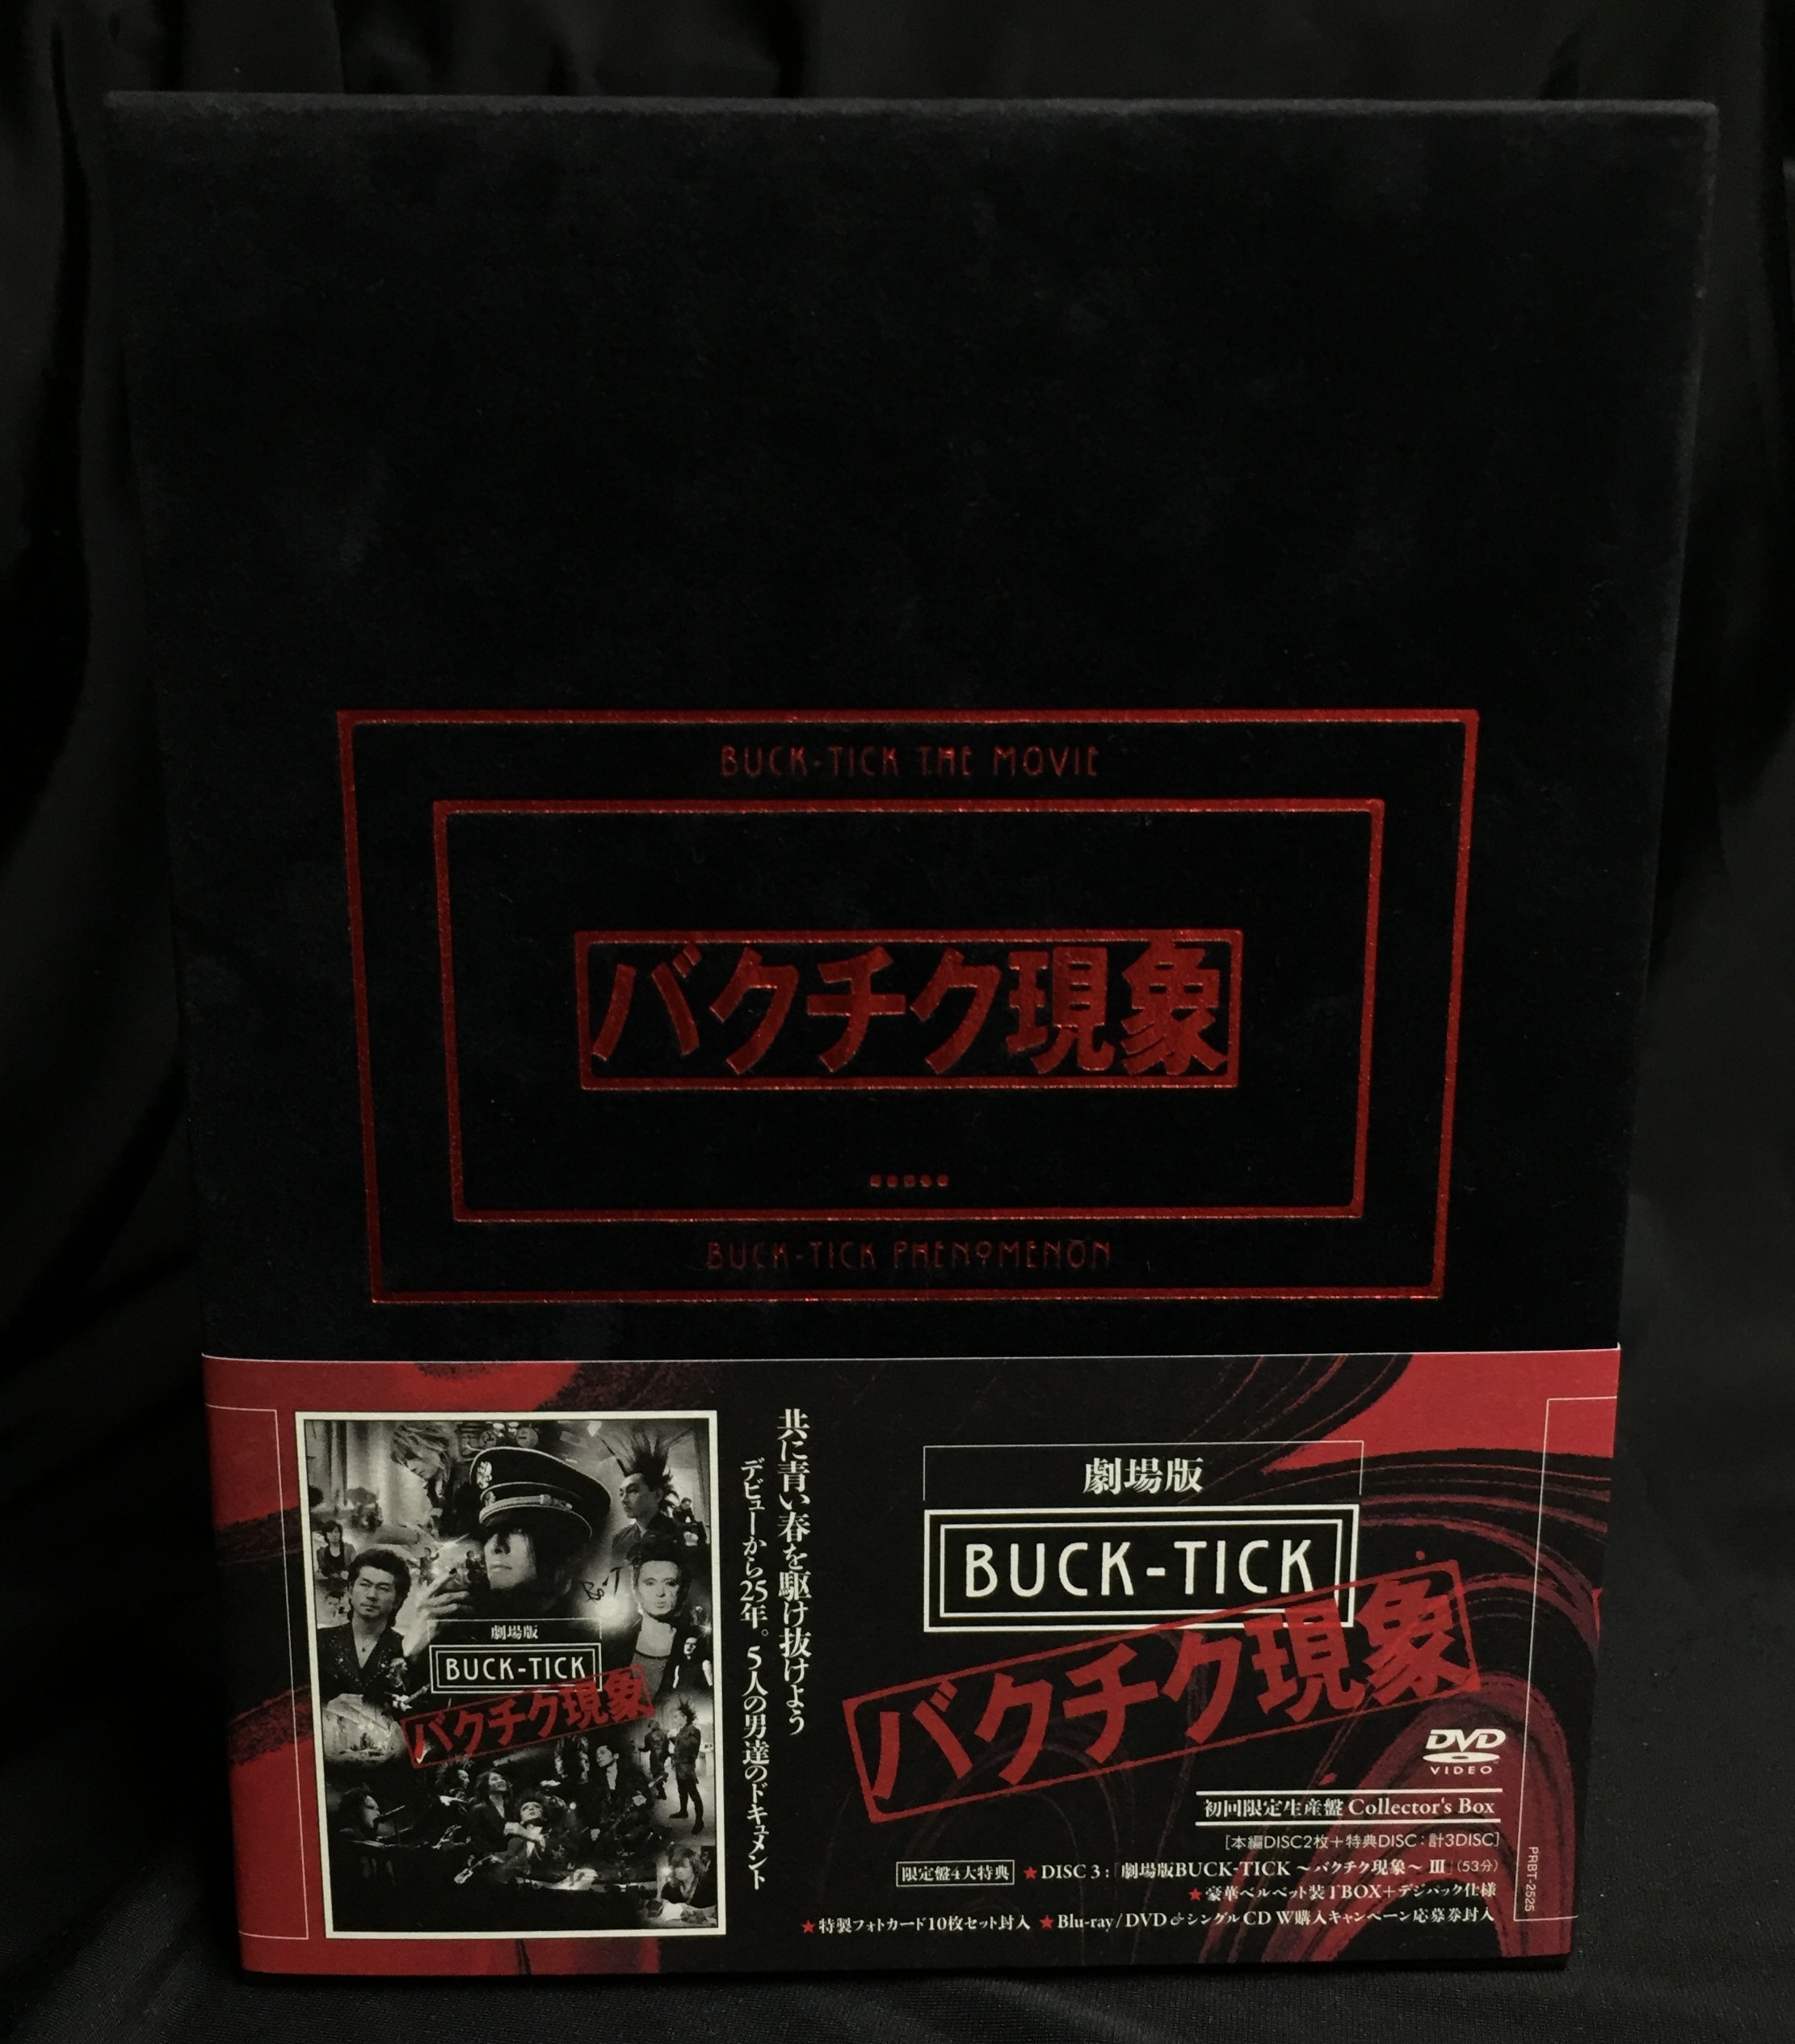 劇場版 BUCK-TICK～バクチク現象～ Collector's Box('…